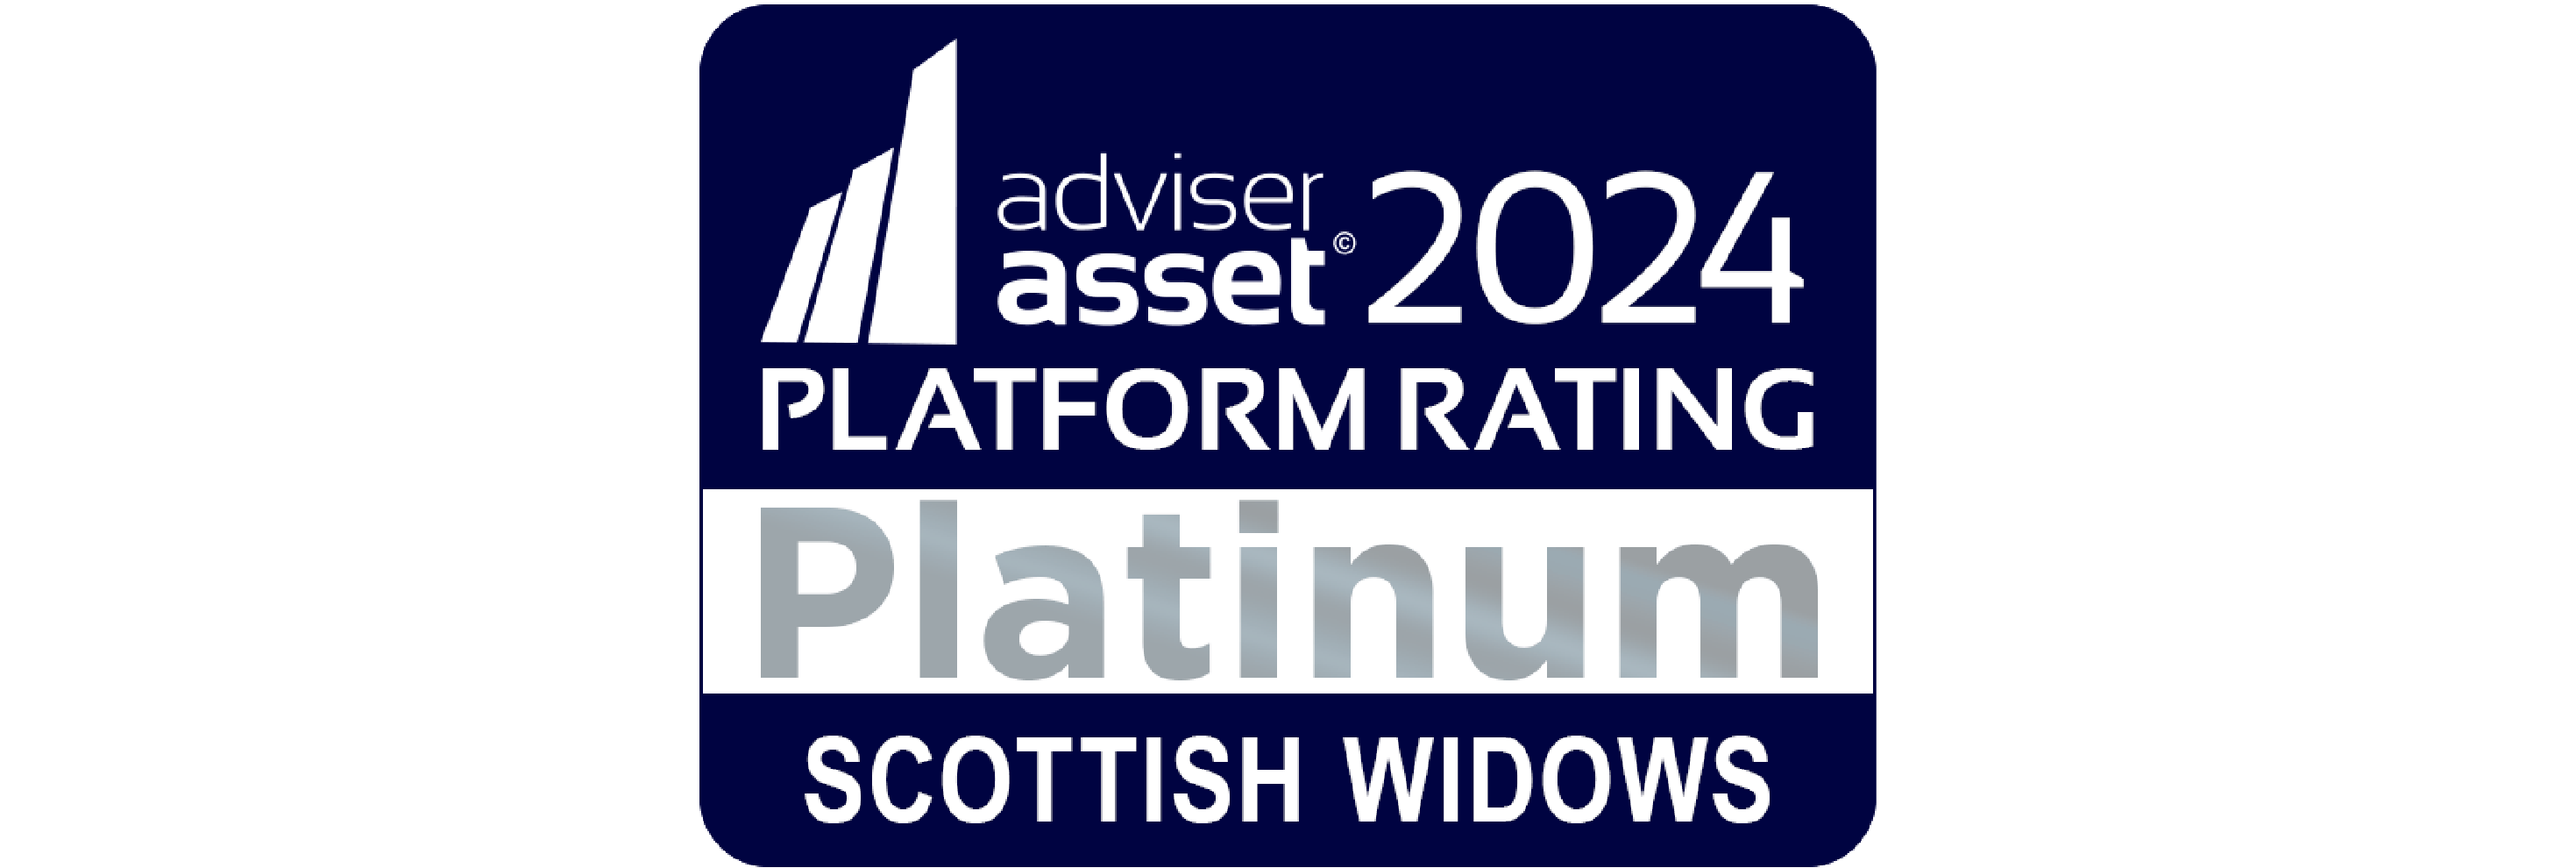 Adviser Asset 2024 Platinum platform rating award image